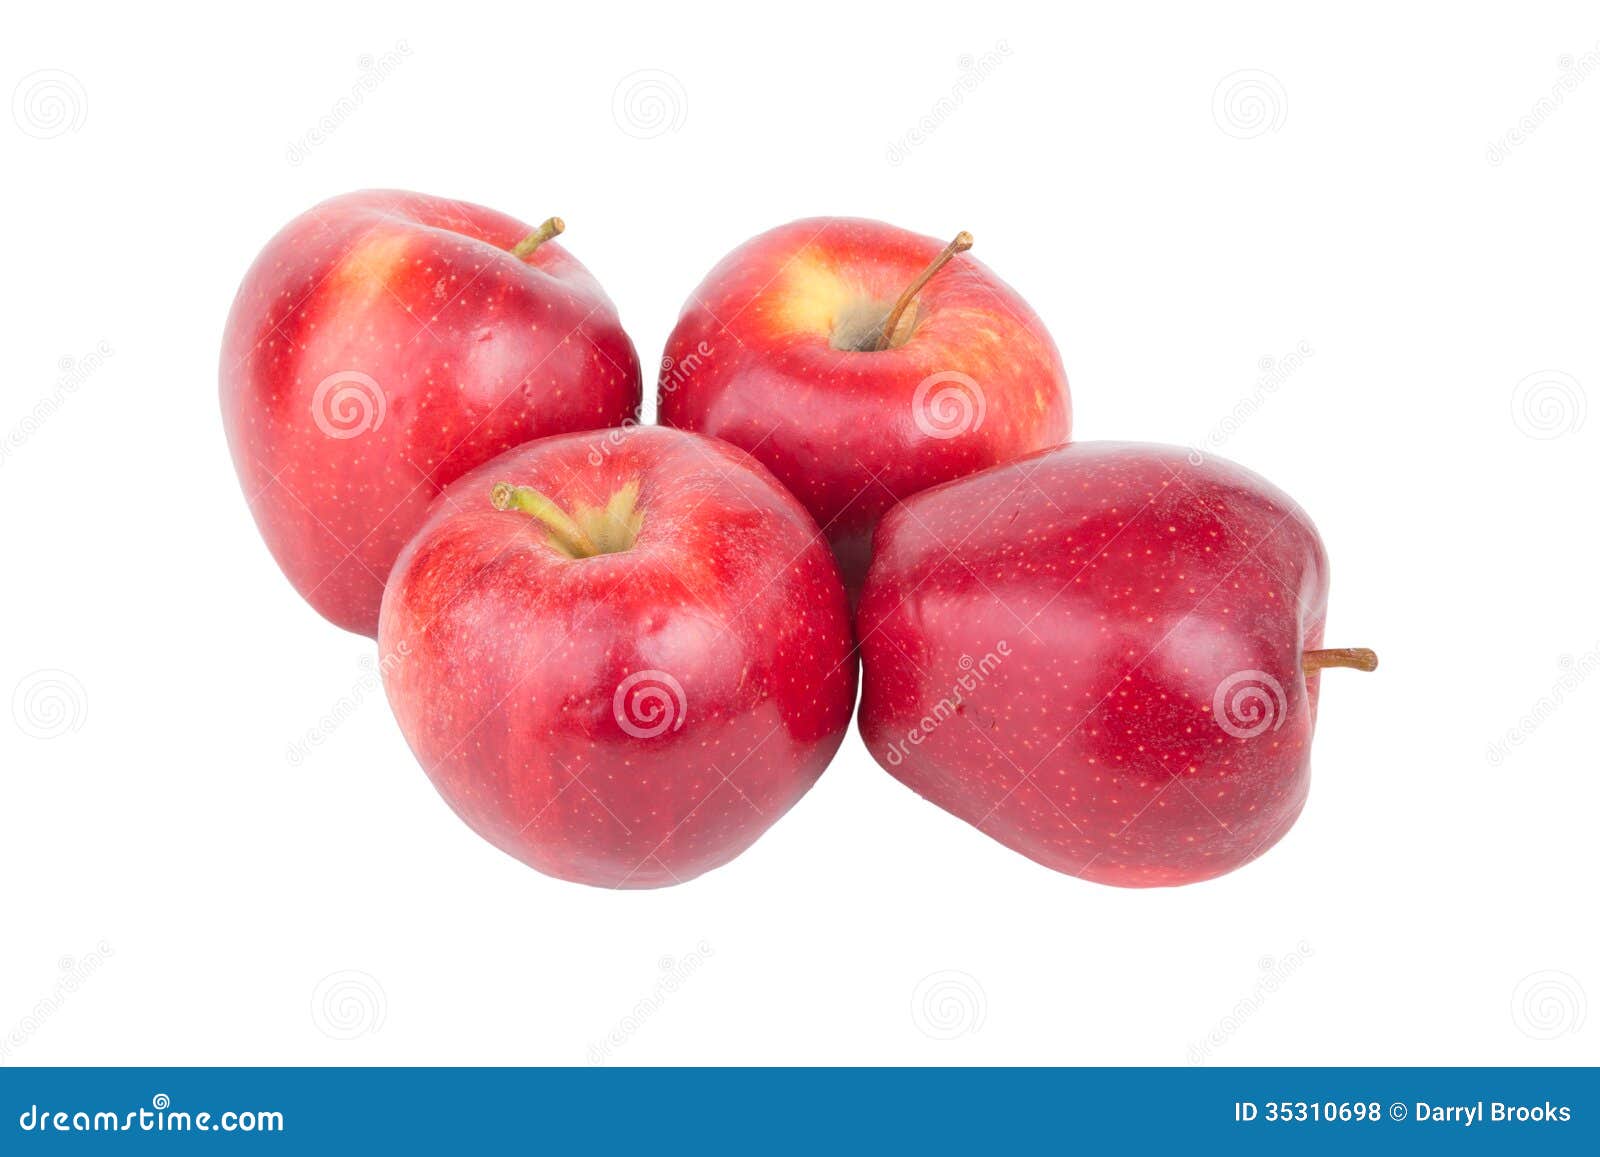 Четверо яблок. 4 Яблока. Яблоки 4 штуки. Куча яблок на белом фоне. Несколько яблок на прозрачном фоне.